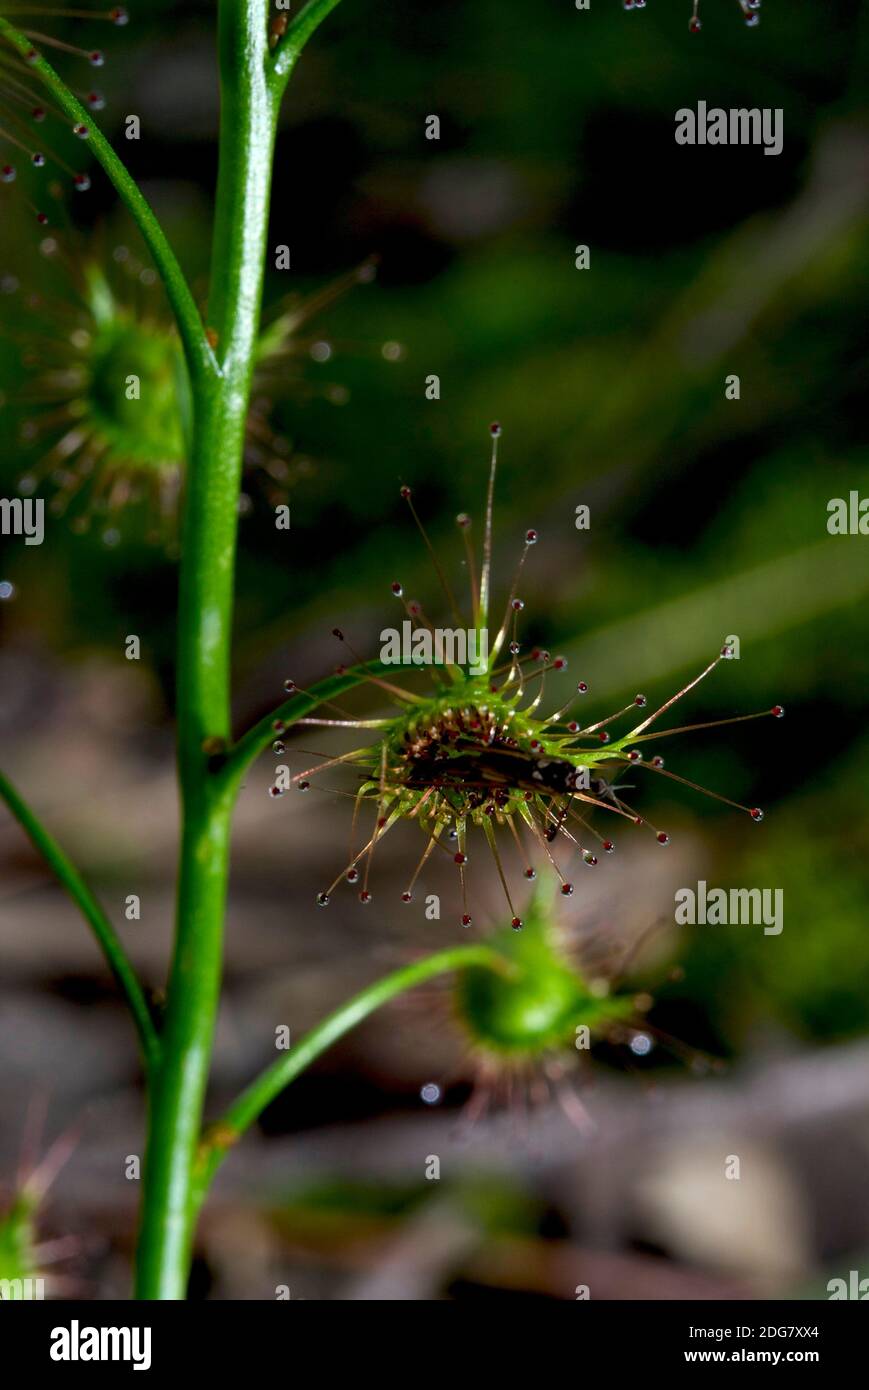 Un insecte peu méfiant est sur le point de devenir un repas pour ce Sundew d'oreille (Drosera Auriculata), une plante insectivore australienne très commune. Banque D'Images